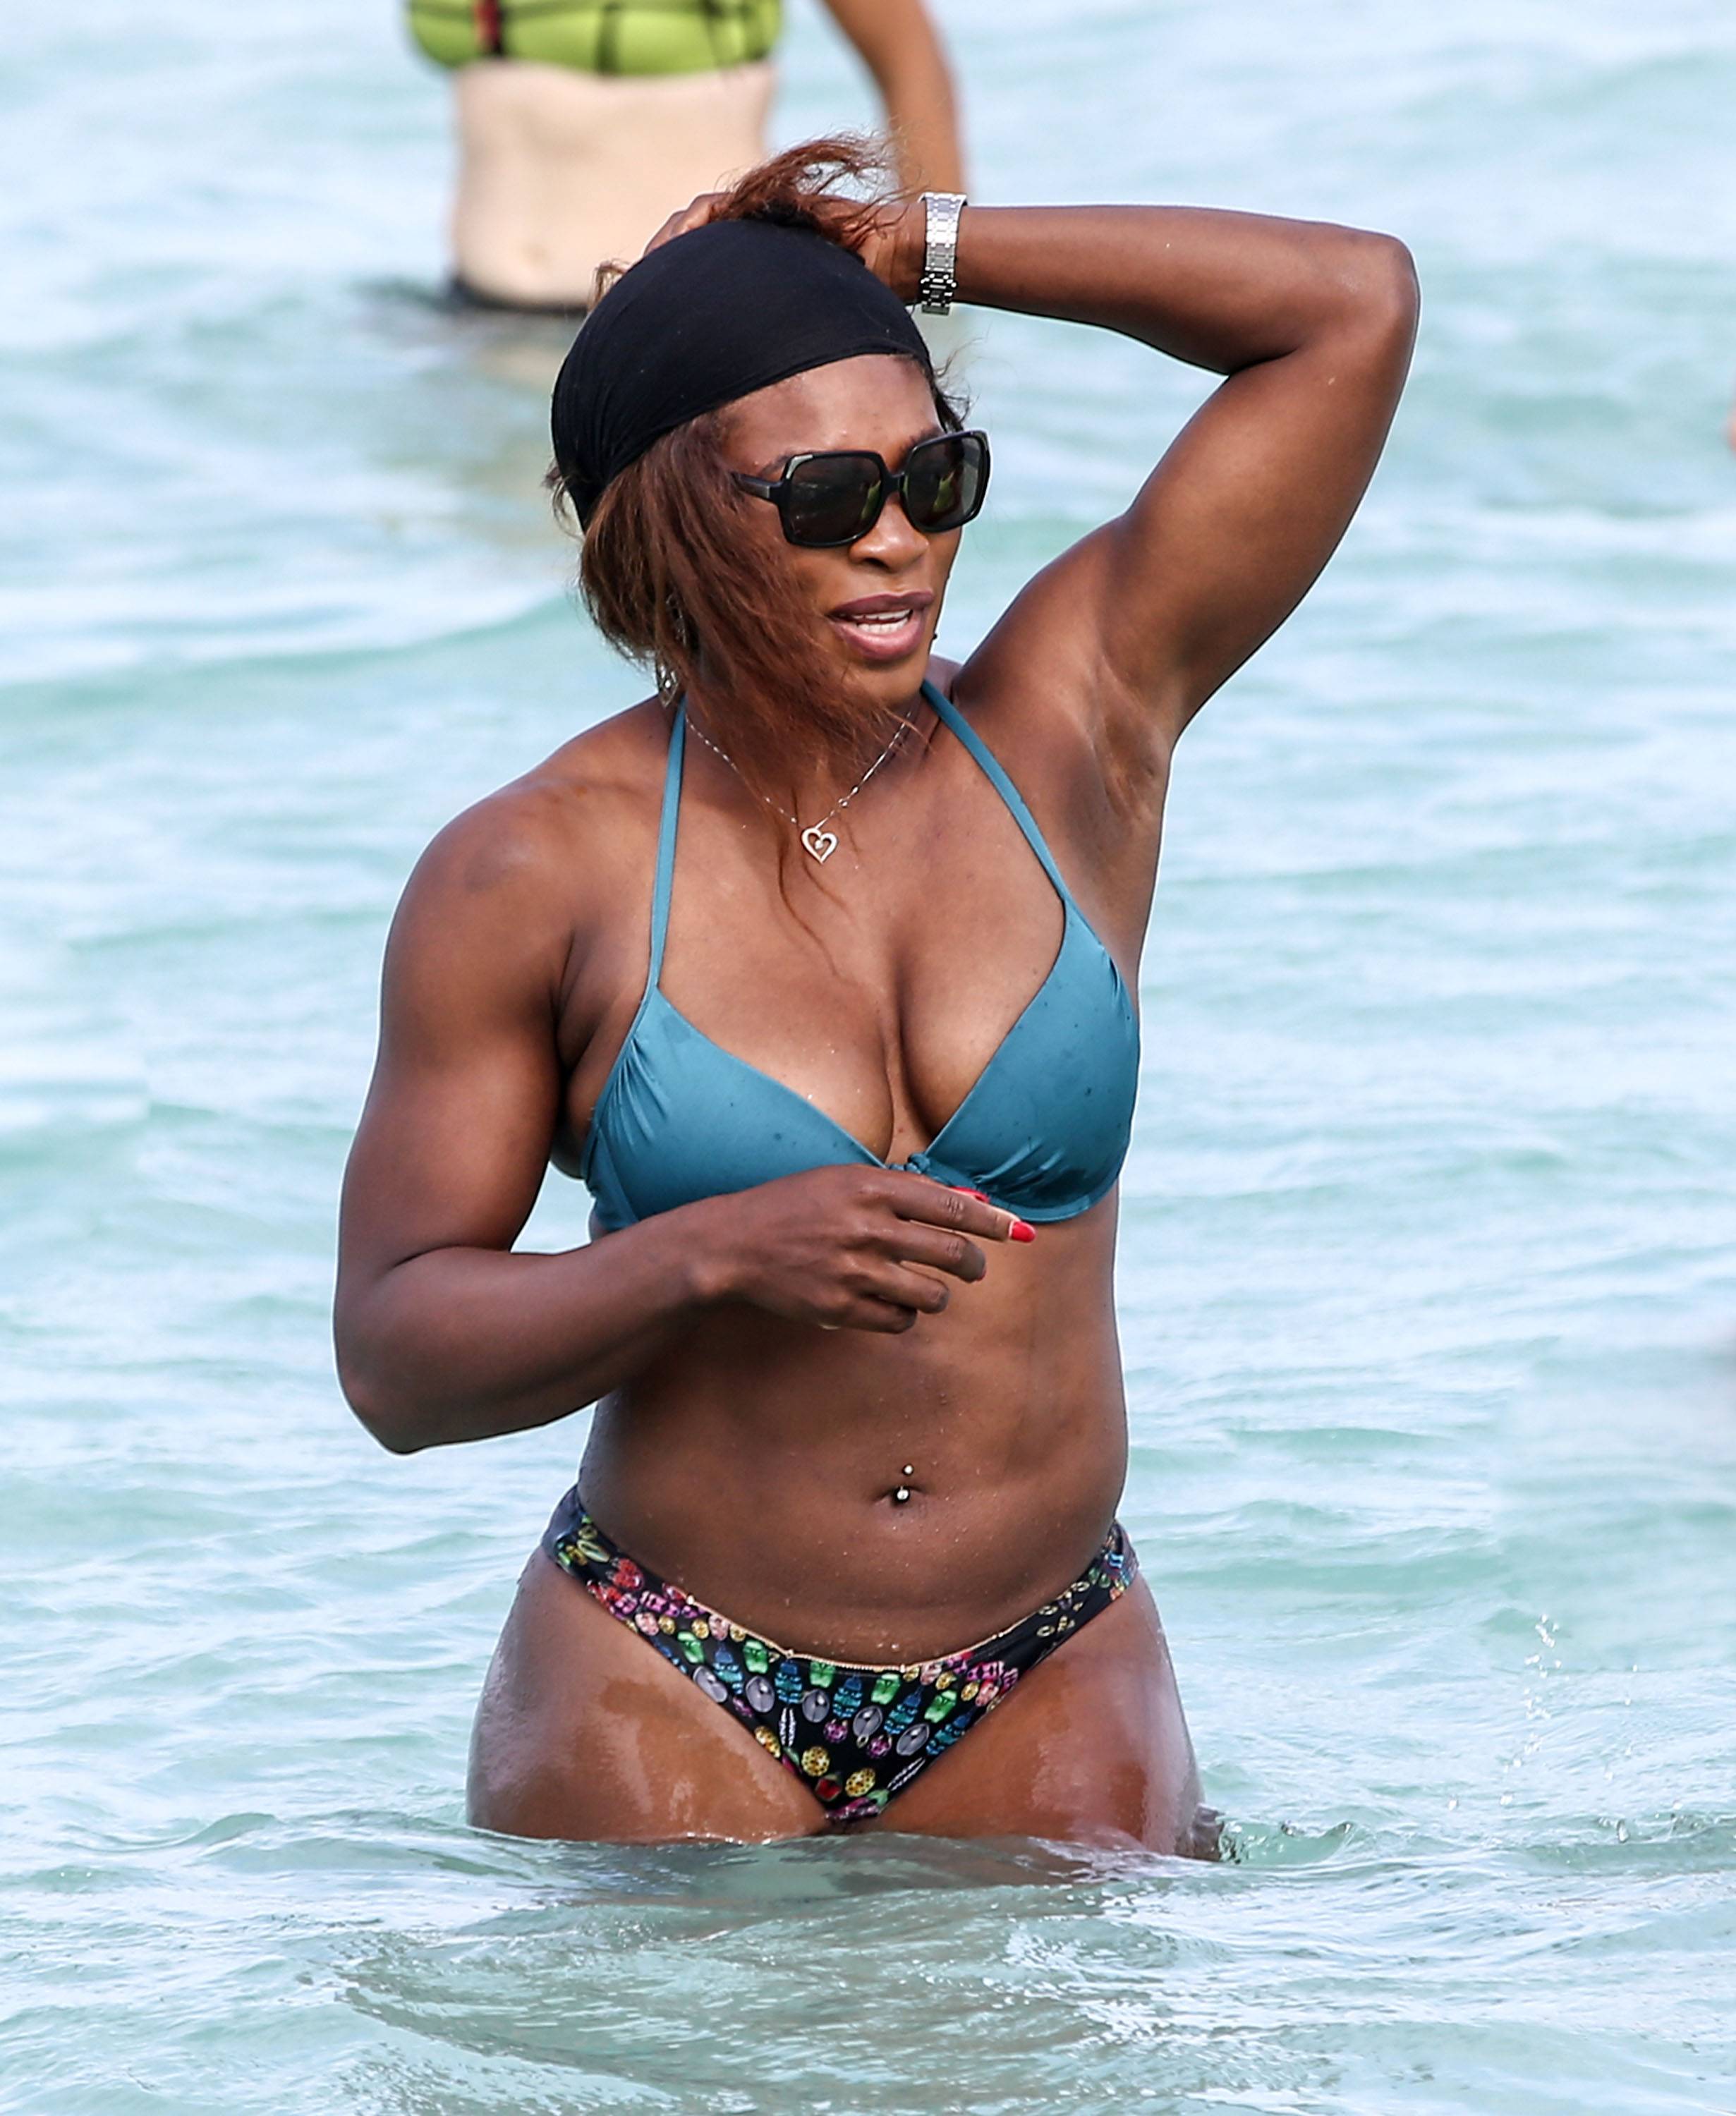 Serena Williams Shows Off Her Bikini Body In Miami Photos